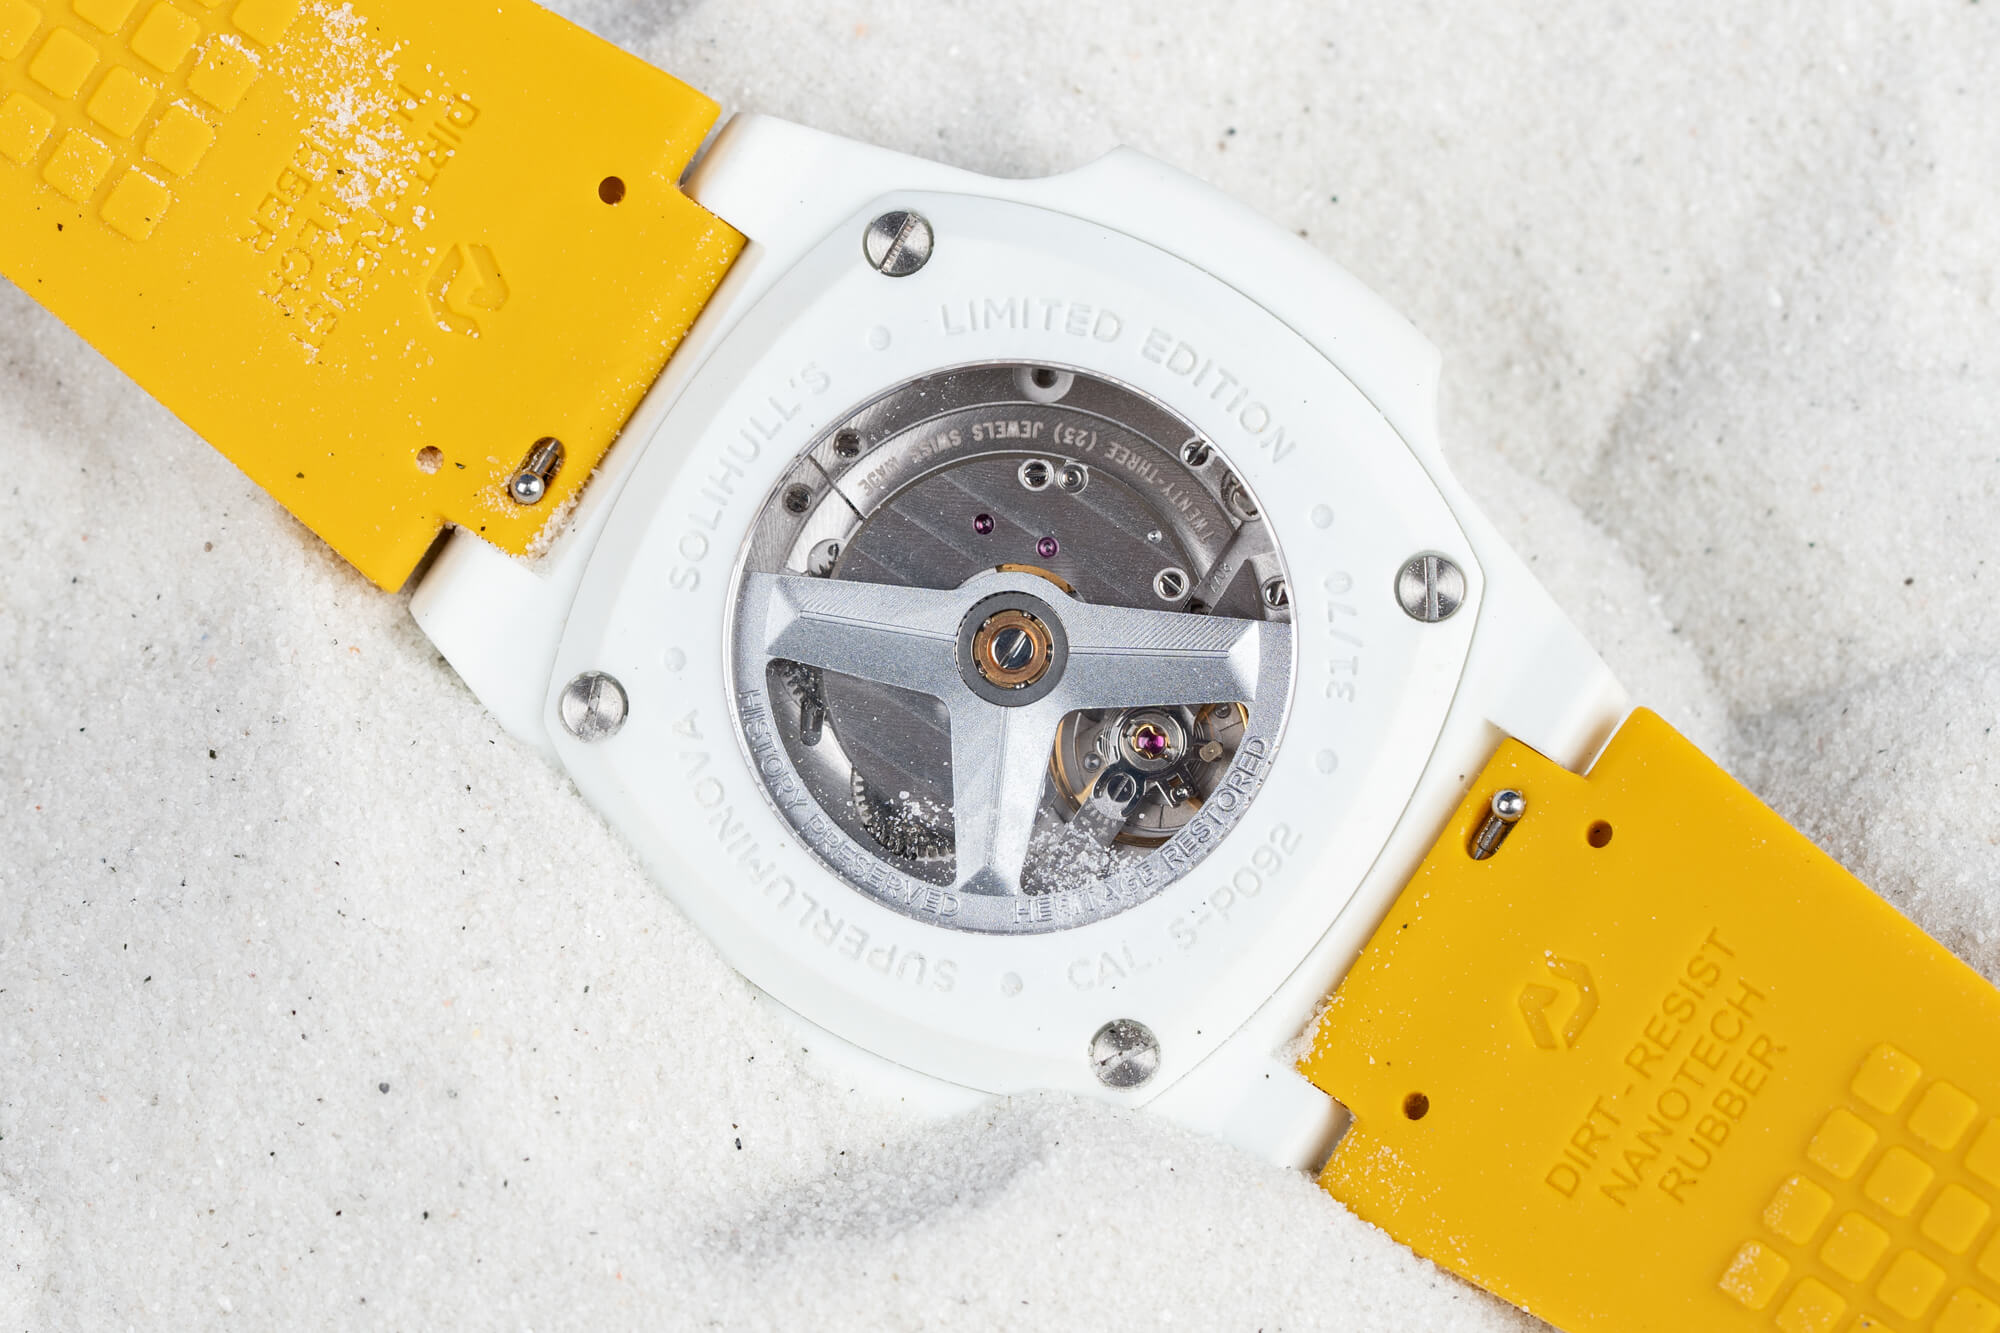 努恩官方发行的索里赫尔限量版手表如何-小清新风格设计腕表